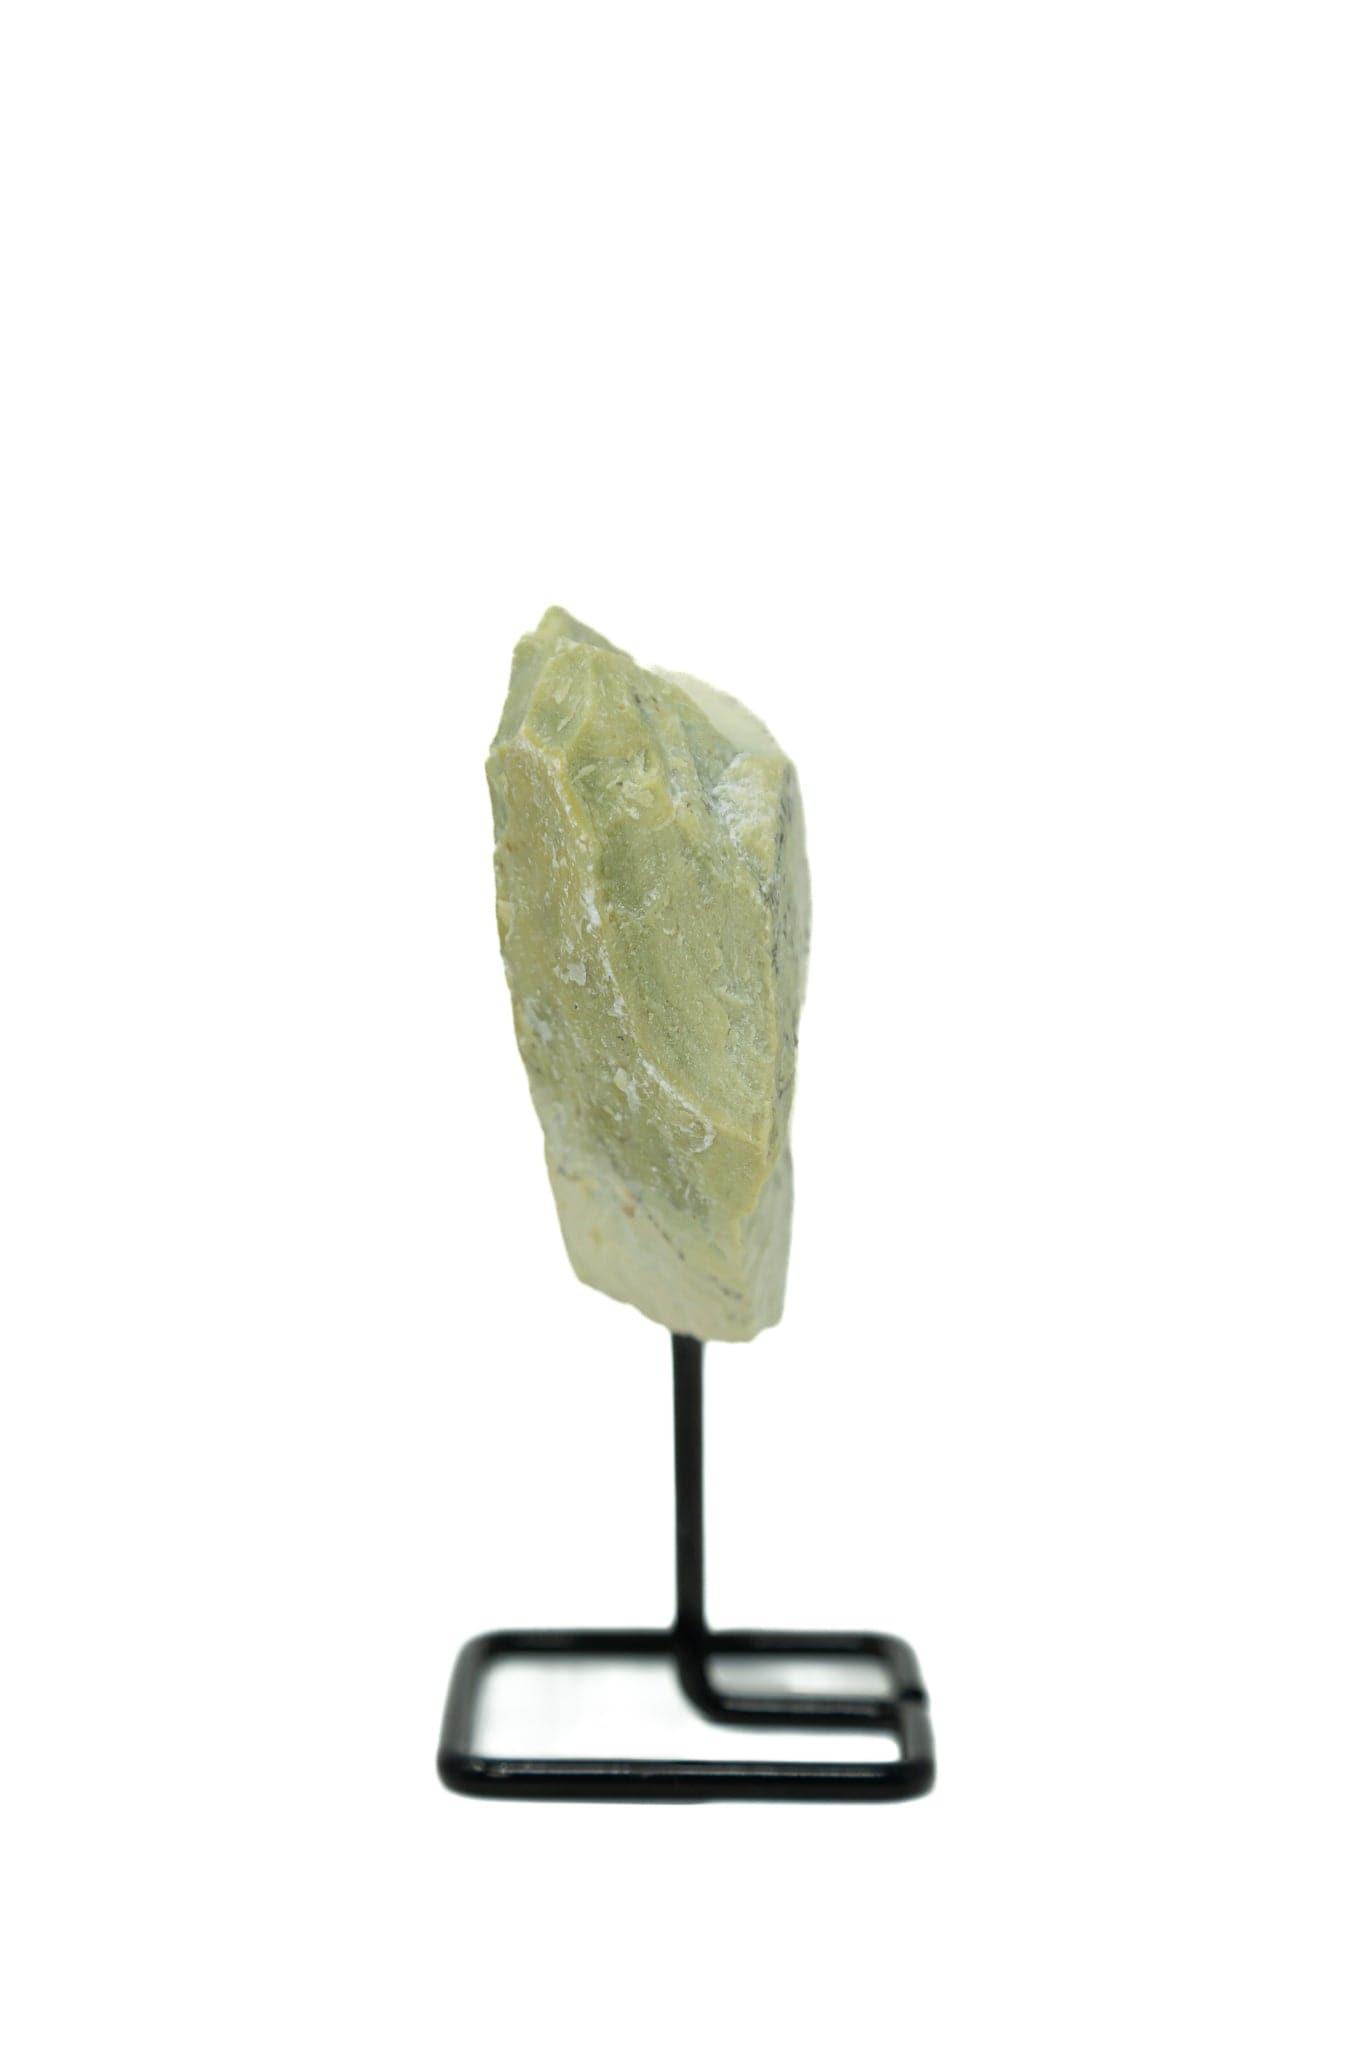 Vesuvianite on Pin Rough Crystals